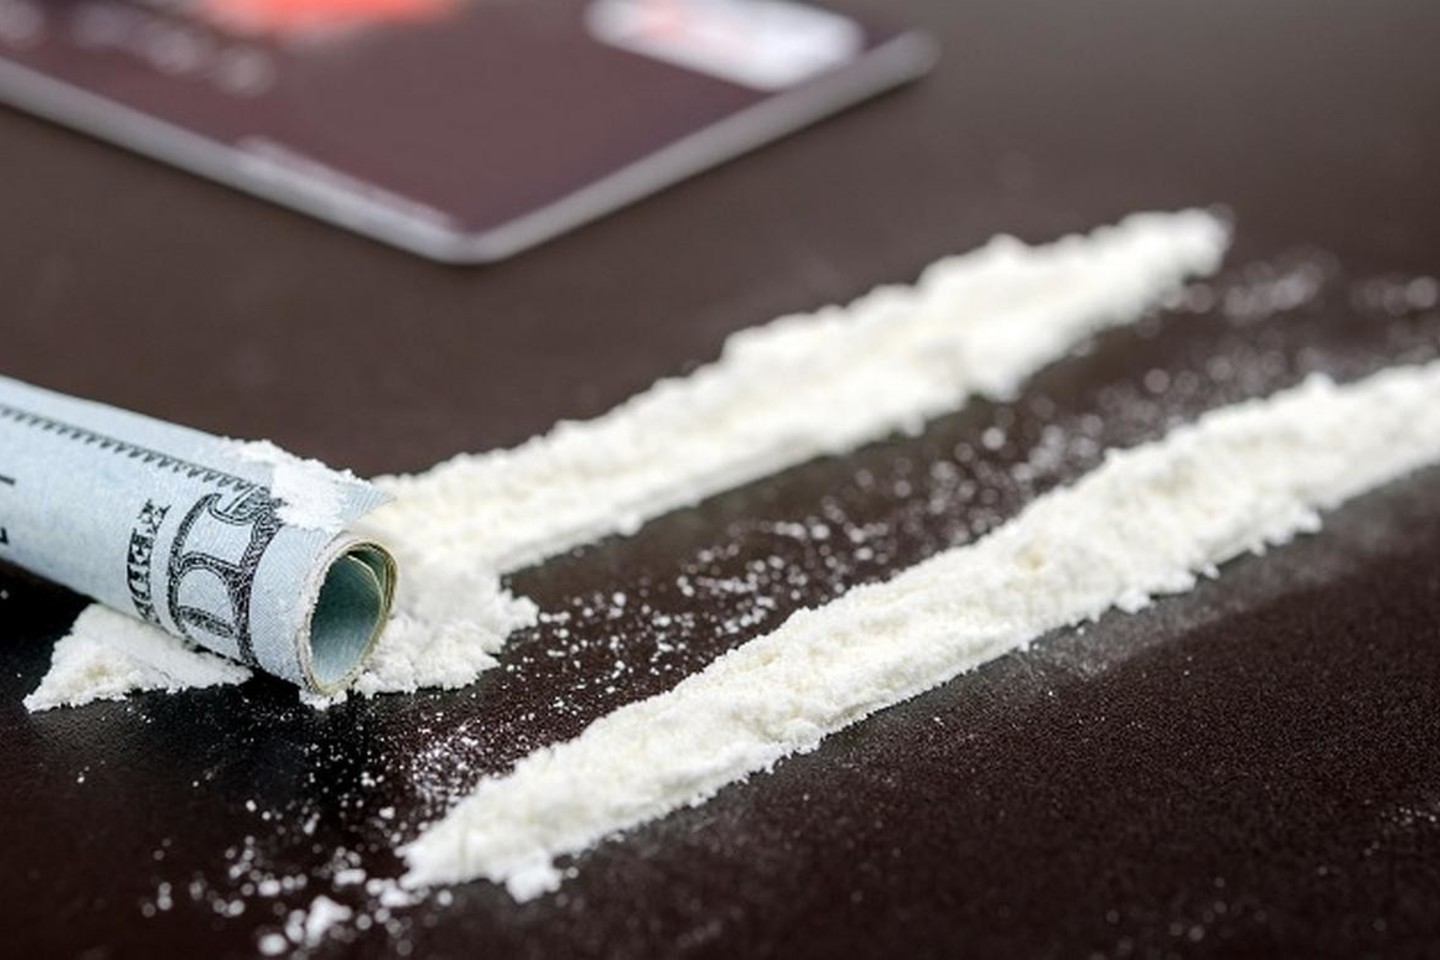  Kokainas - vienas baisiausių ir brangiausių narkotikų.